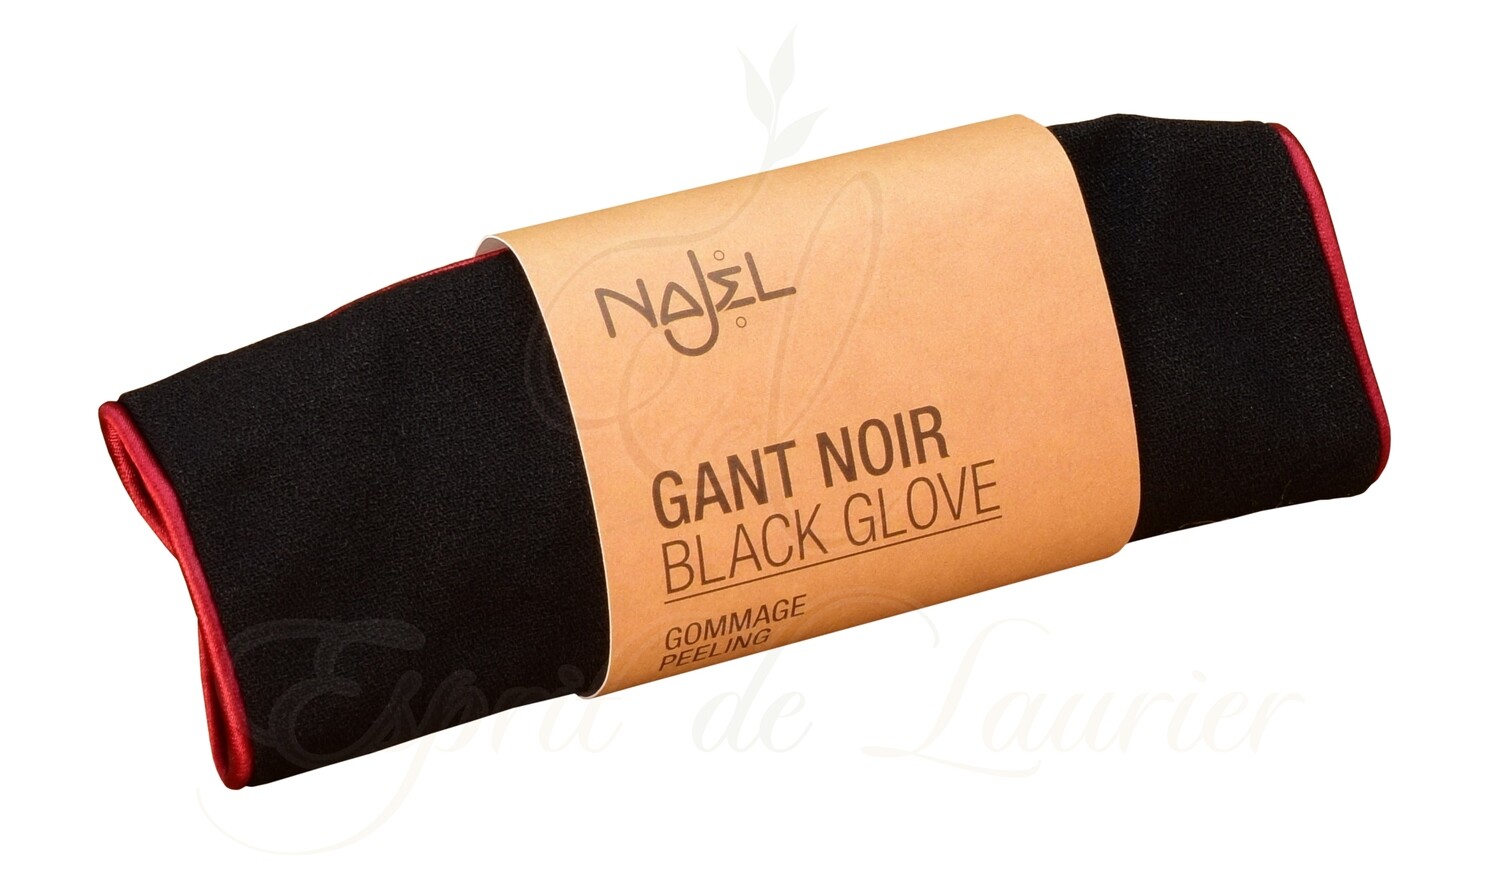 Gant noir